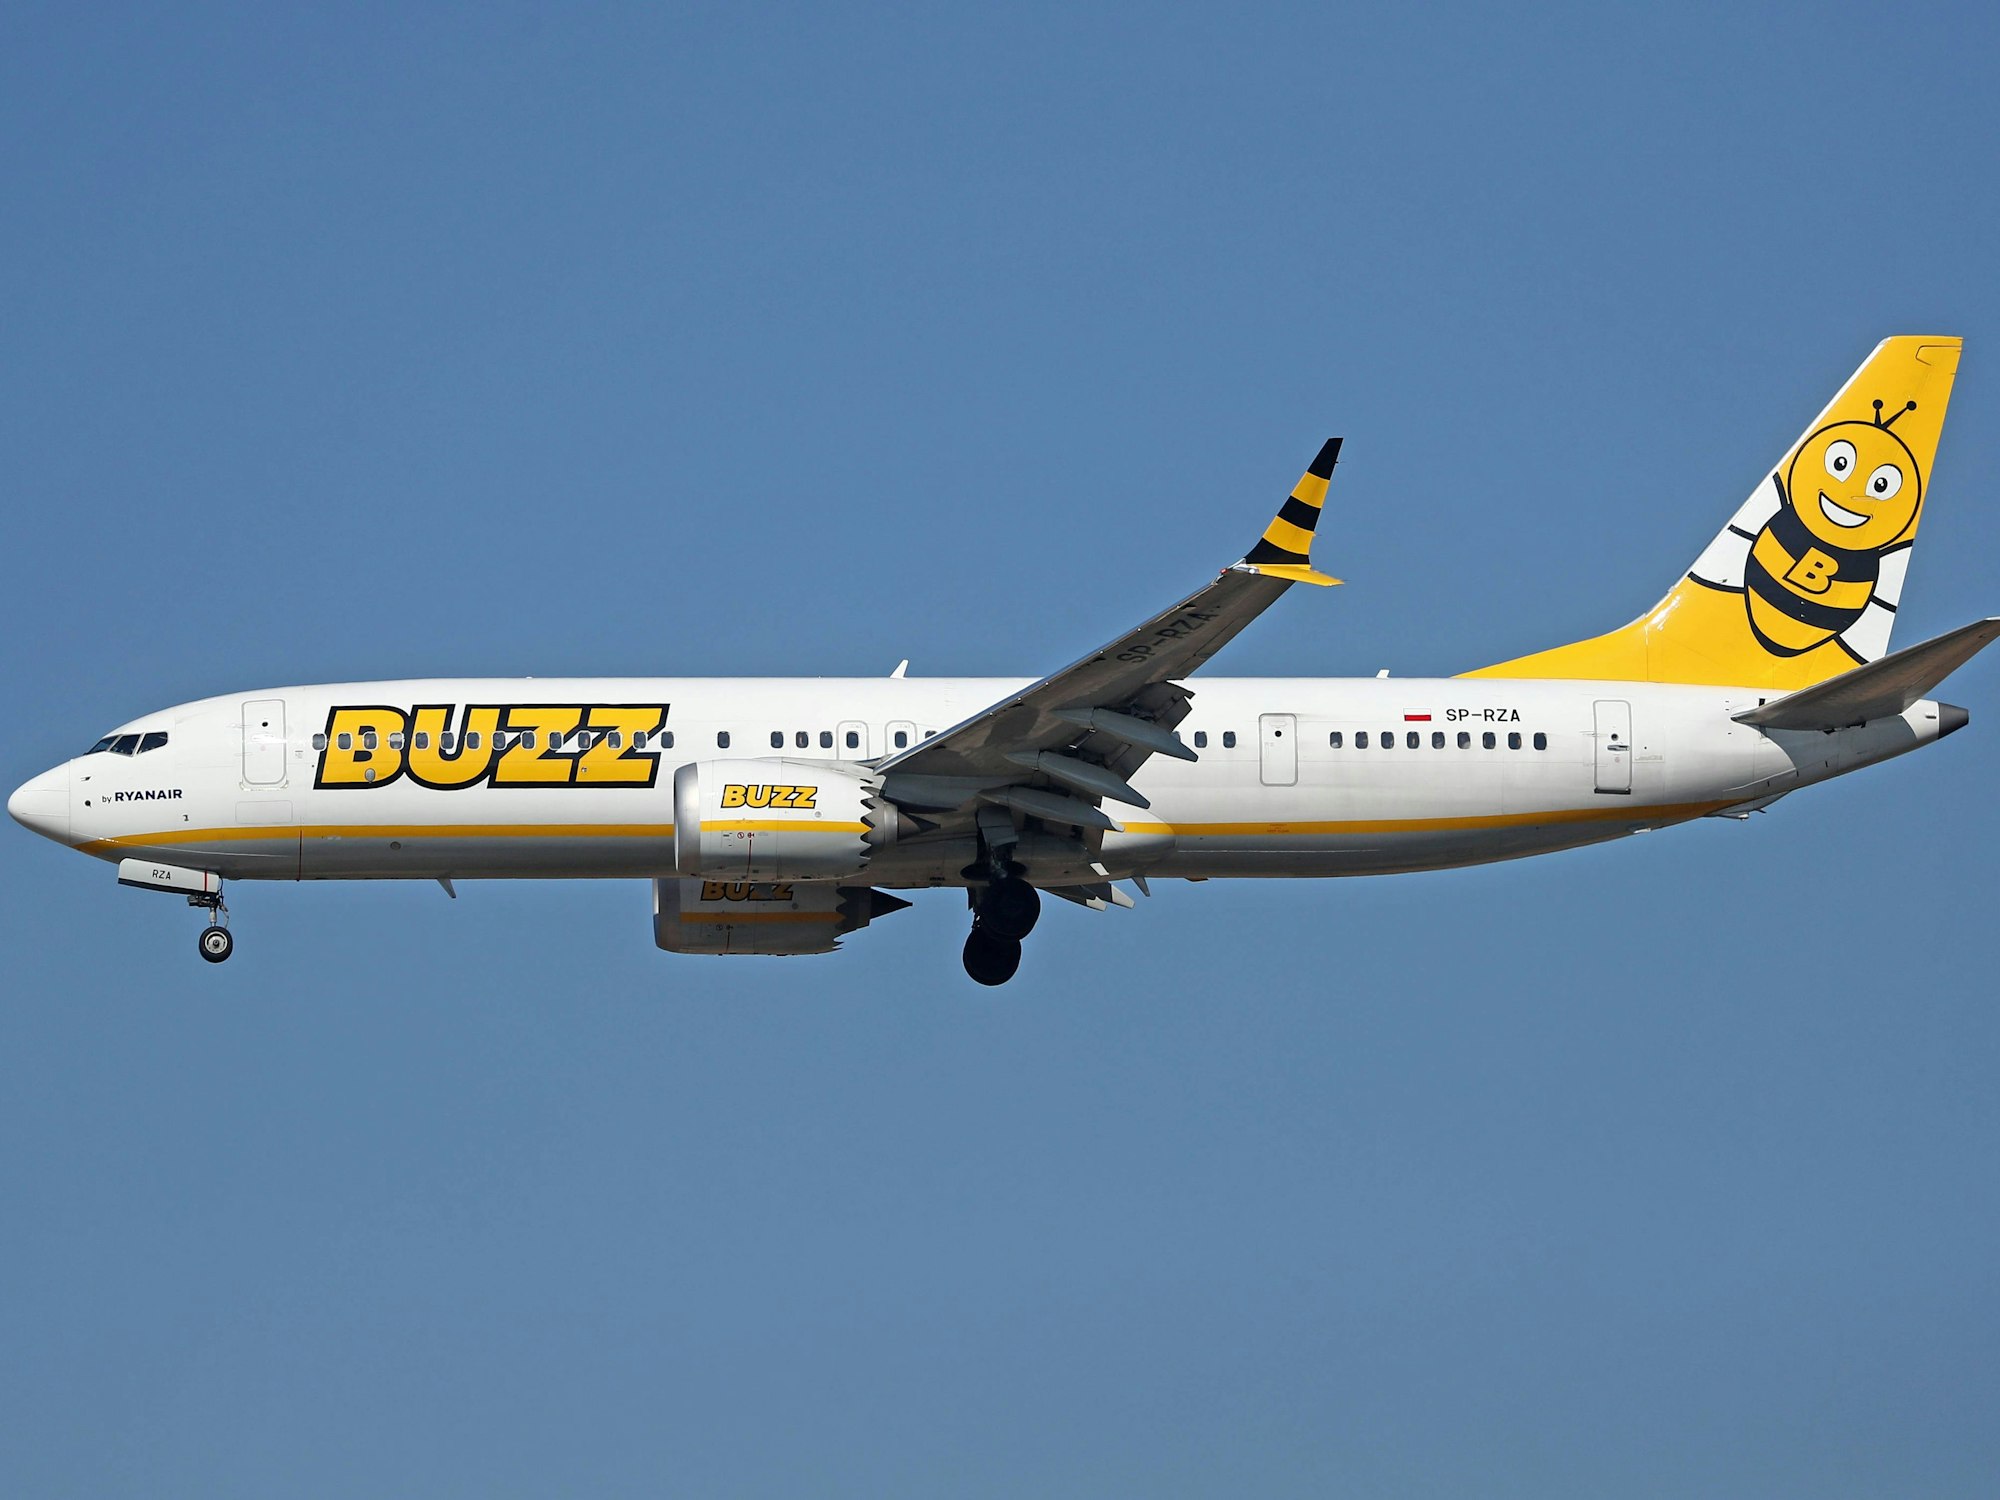 Ein Flugzeug der polnischen Airline Buzz, Partner-Unternehmen der Billigflug-Airline Ryanair, in der Luft, hier im Februar 2023.